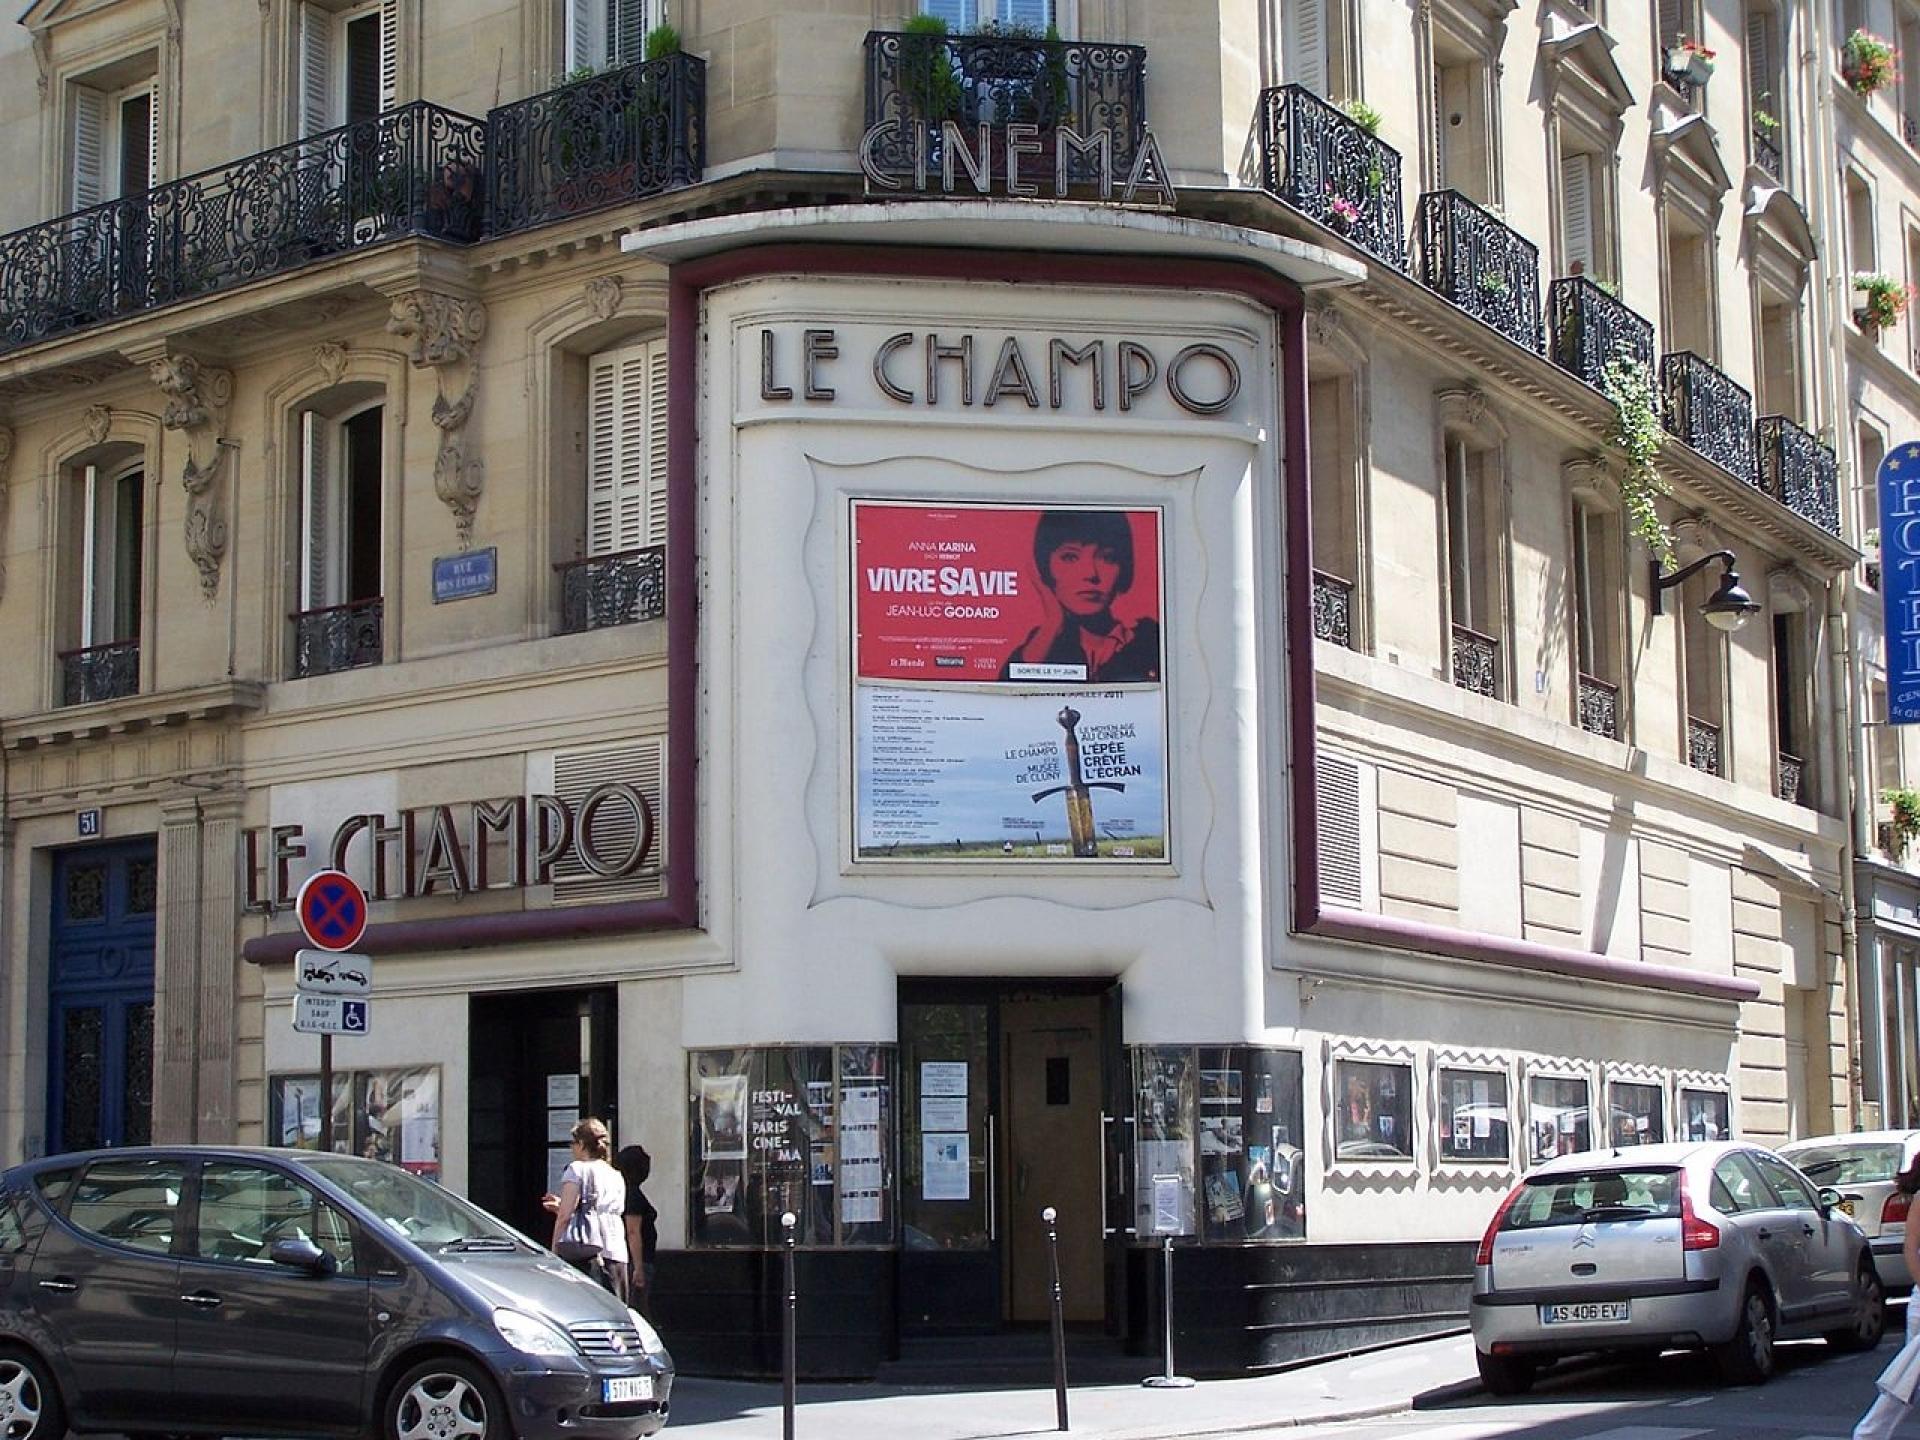 Le Champo; a cult movie showcase